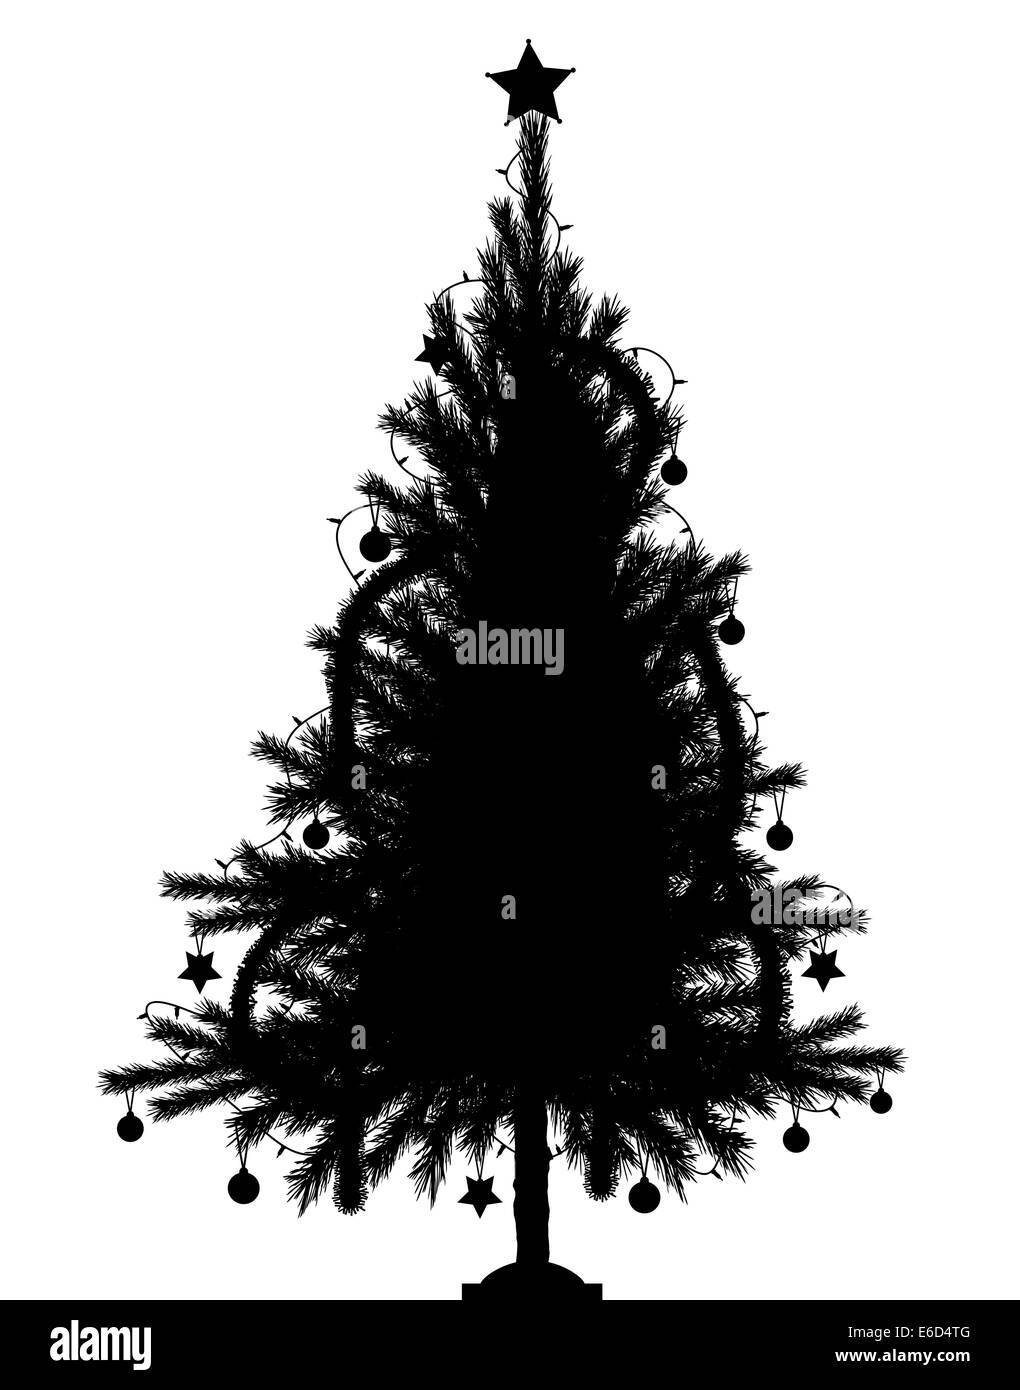 Vecteur modifiable silhouette d'un arbre de Noël avec des décorations et arbres en tant qu'objets séparés Illustration de Vecteur